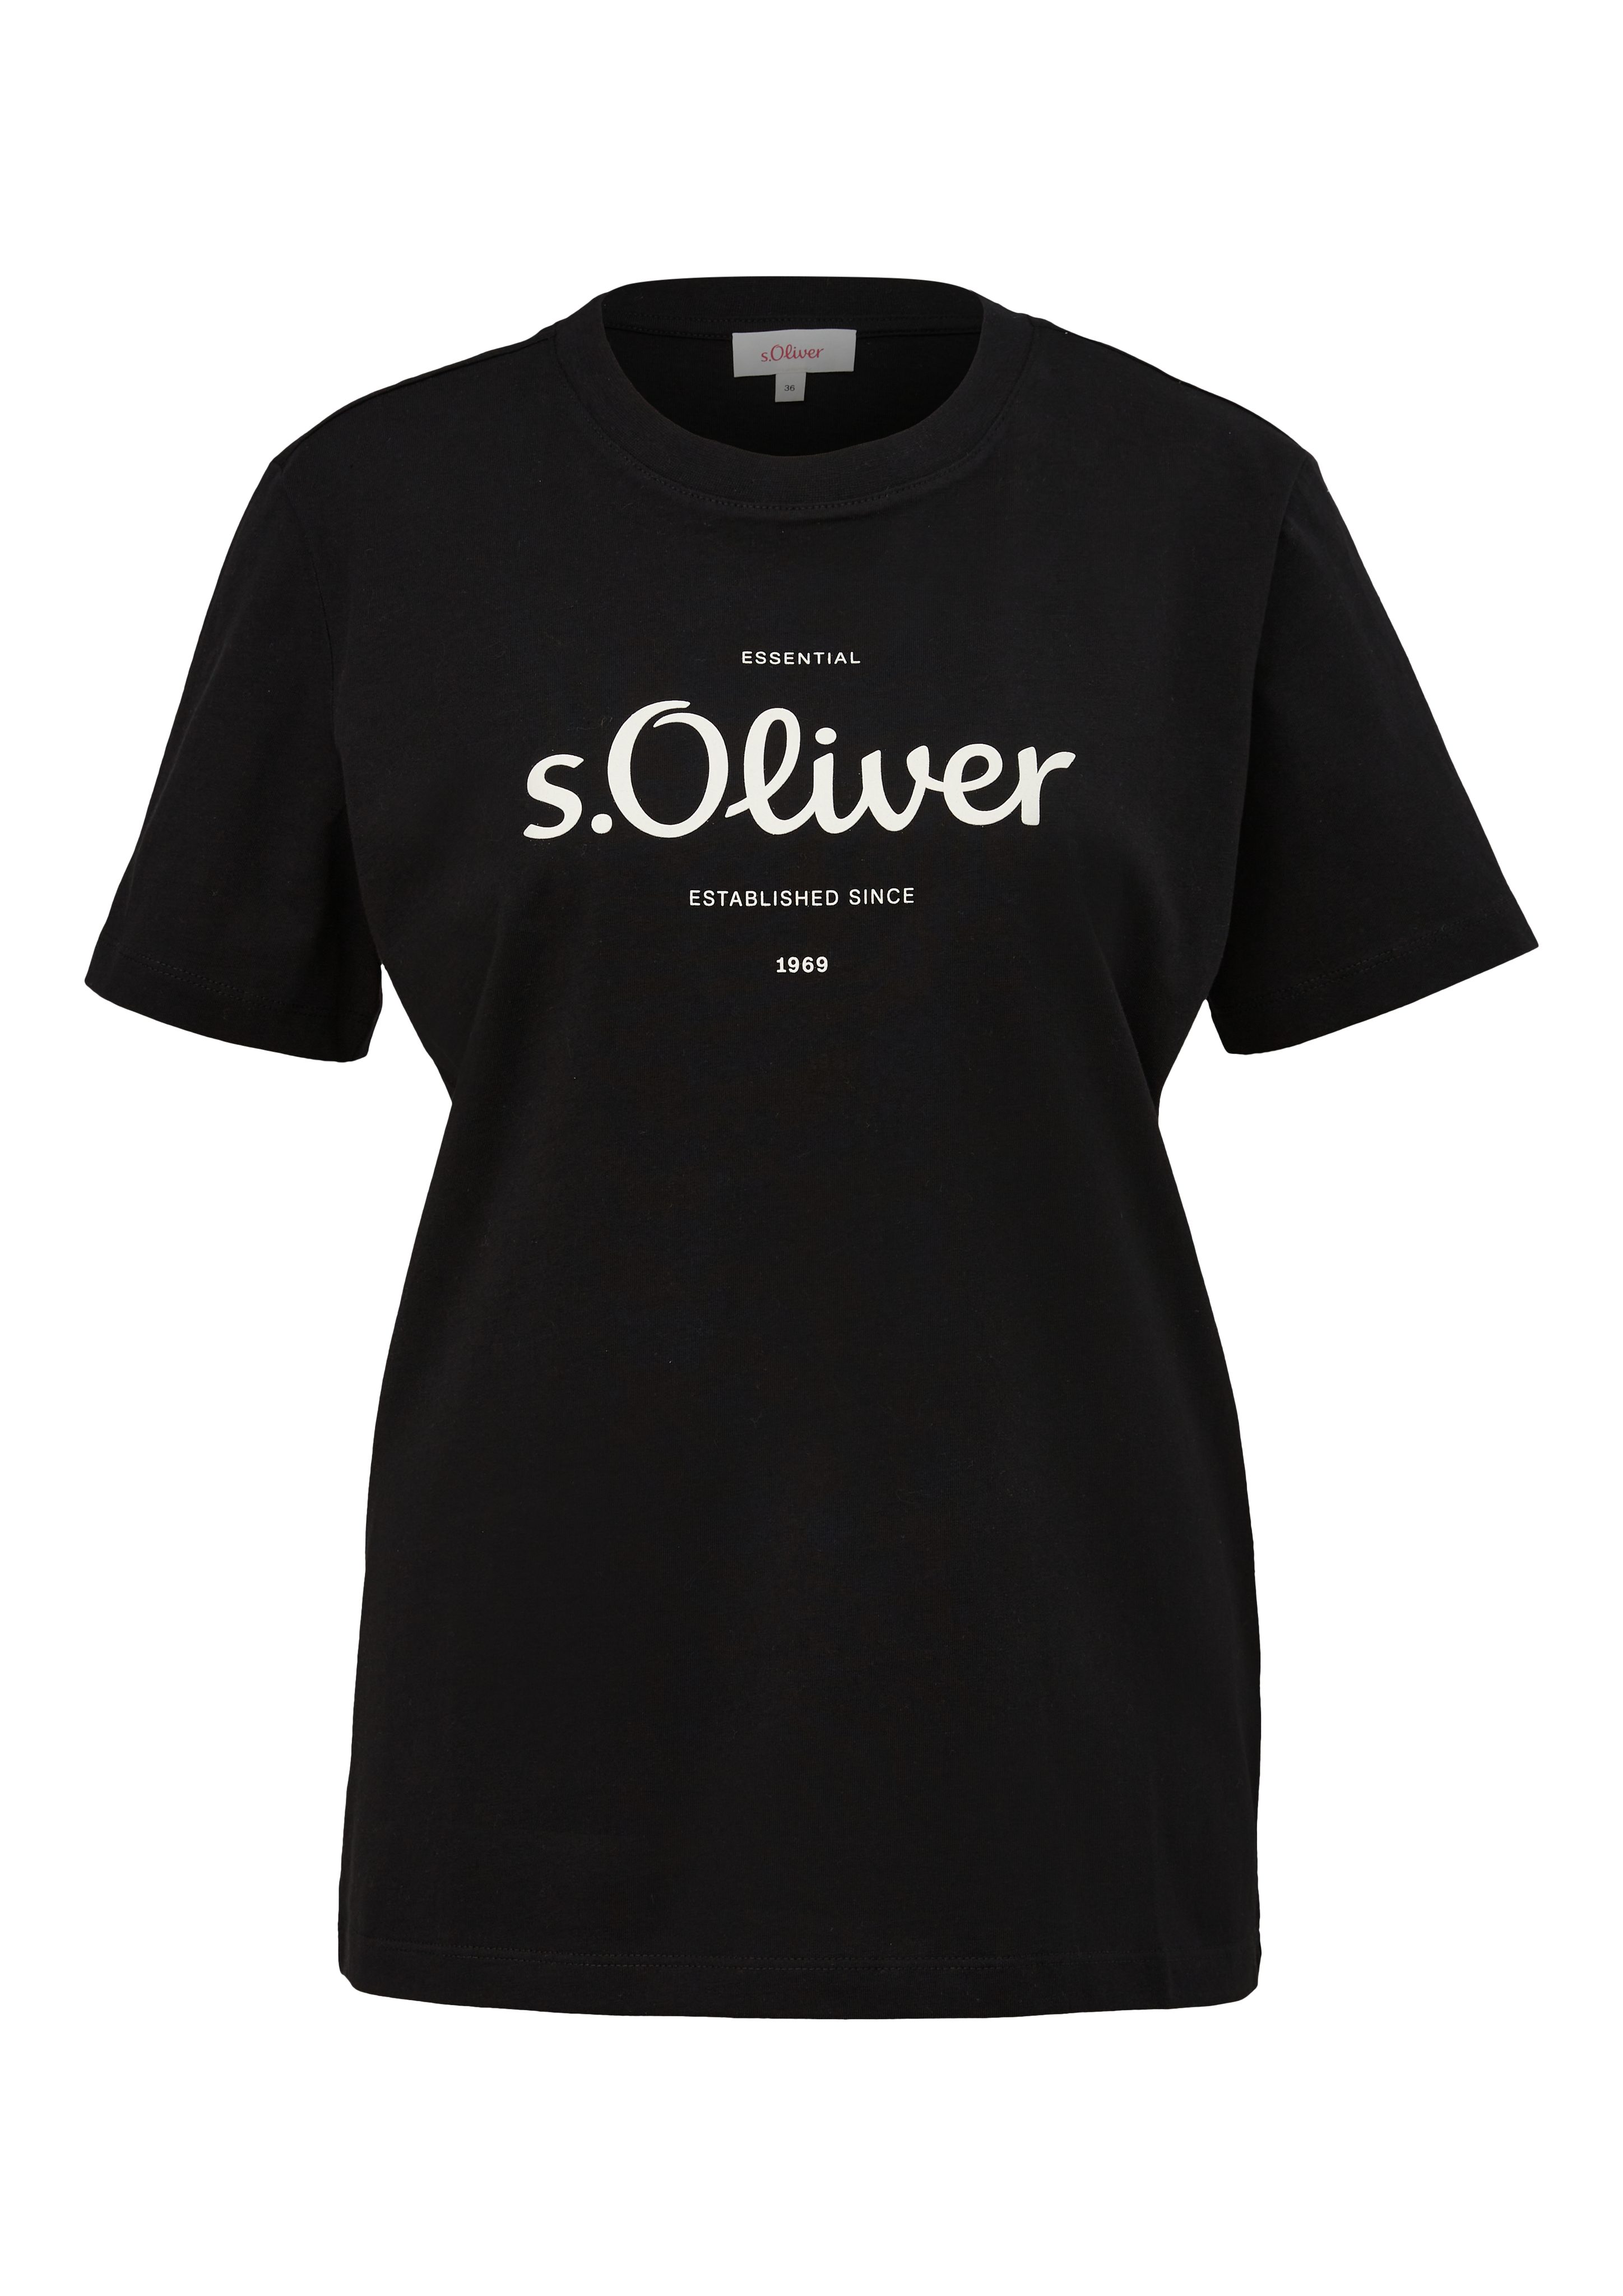 grey/black Logodruck T-Shirt mit s.Oliver vorne